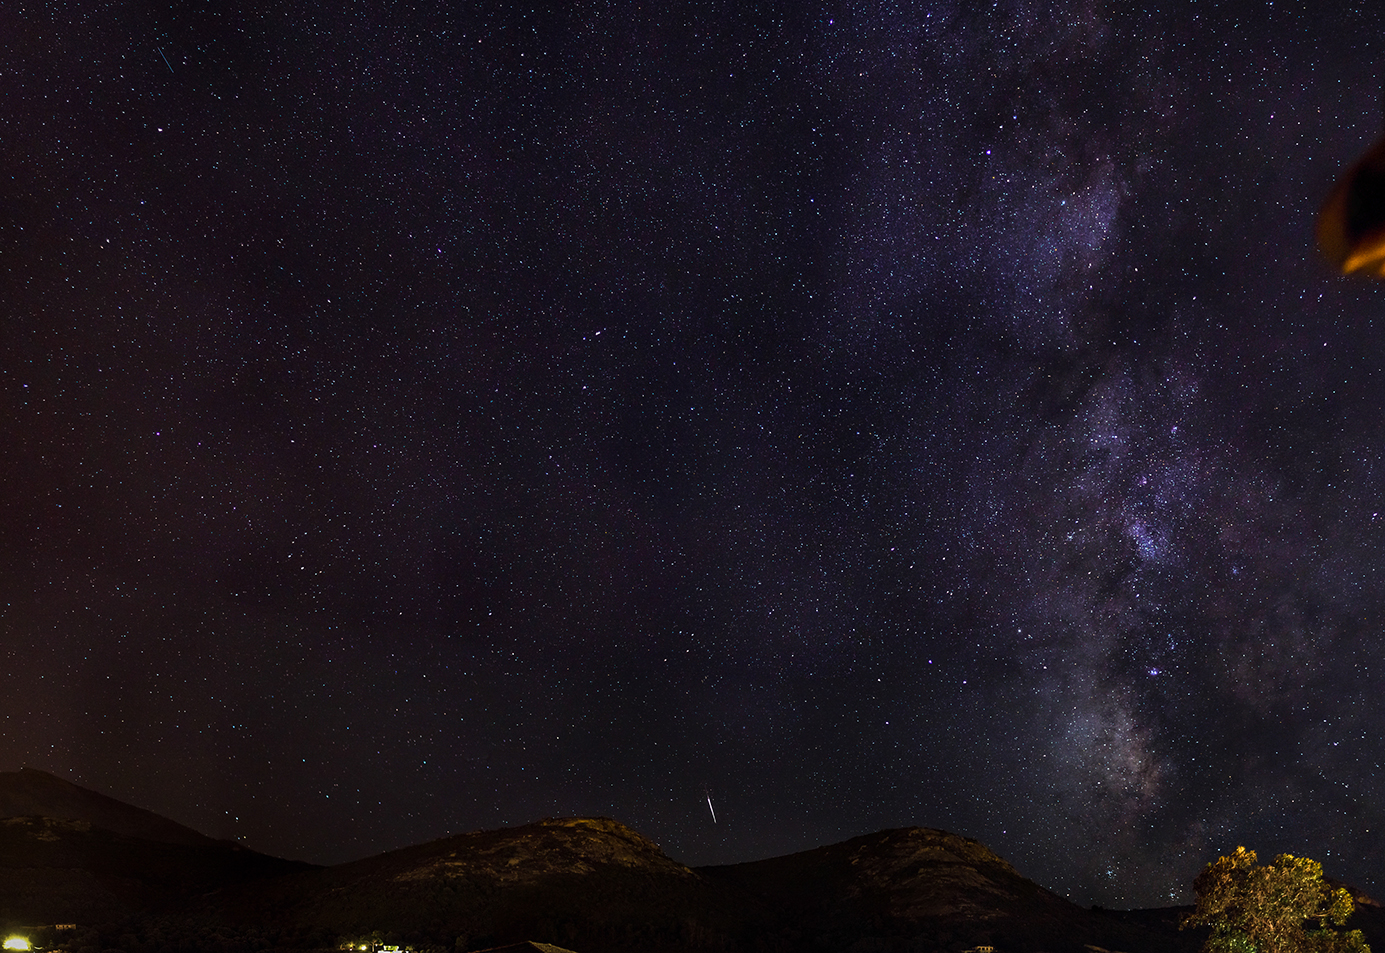 astrophotographie du ciel Corse, immortalisant une étoile filante